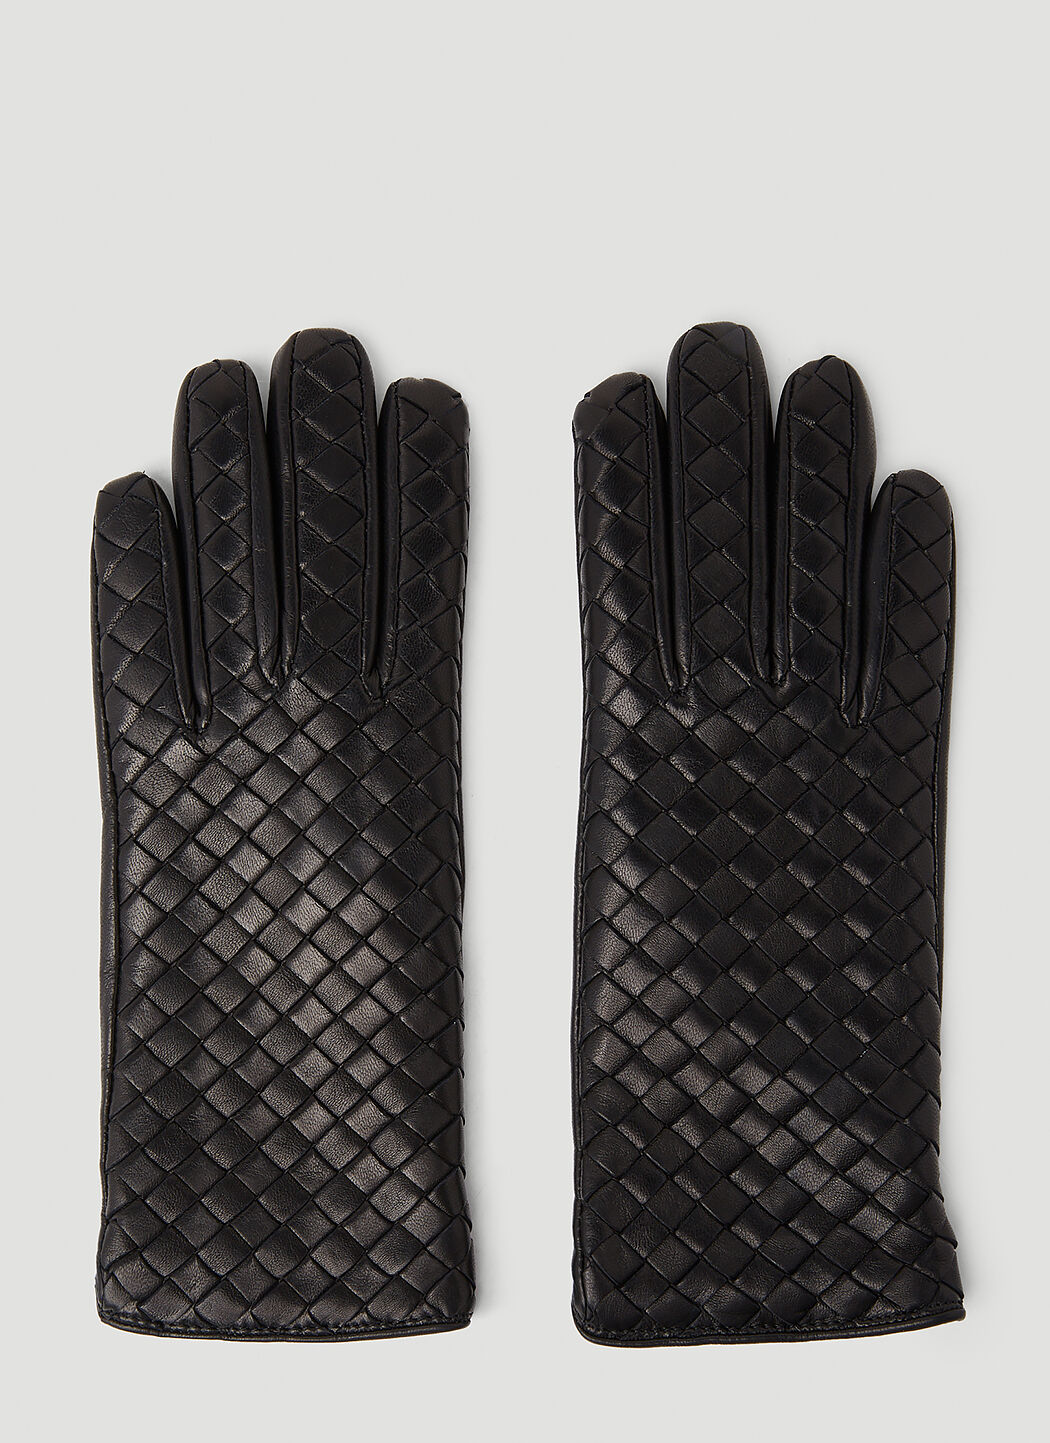 Balenciaga Intrecciato Leather Gloves Black bal0255107